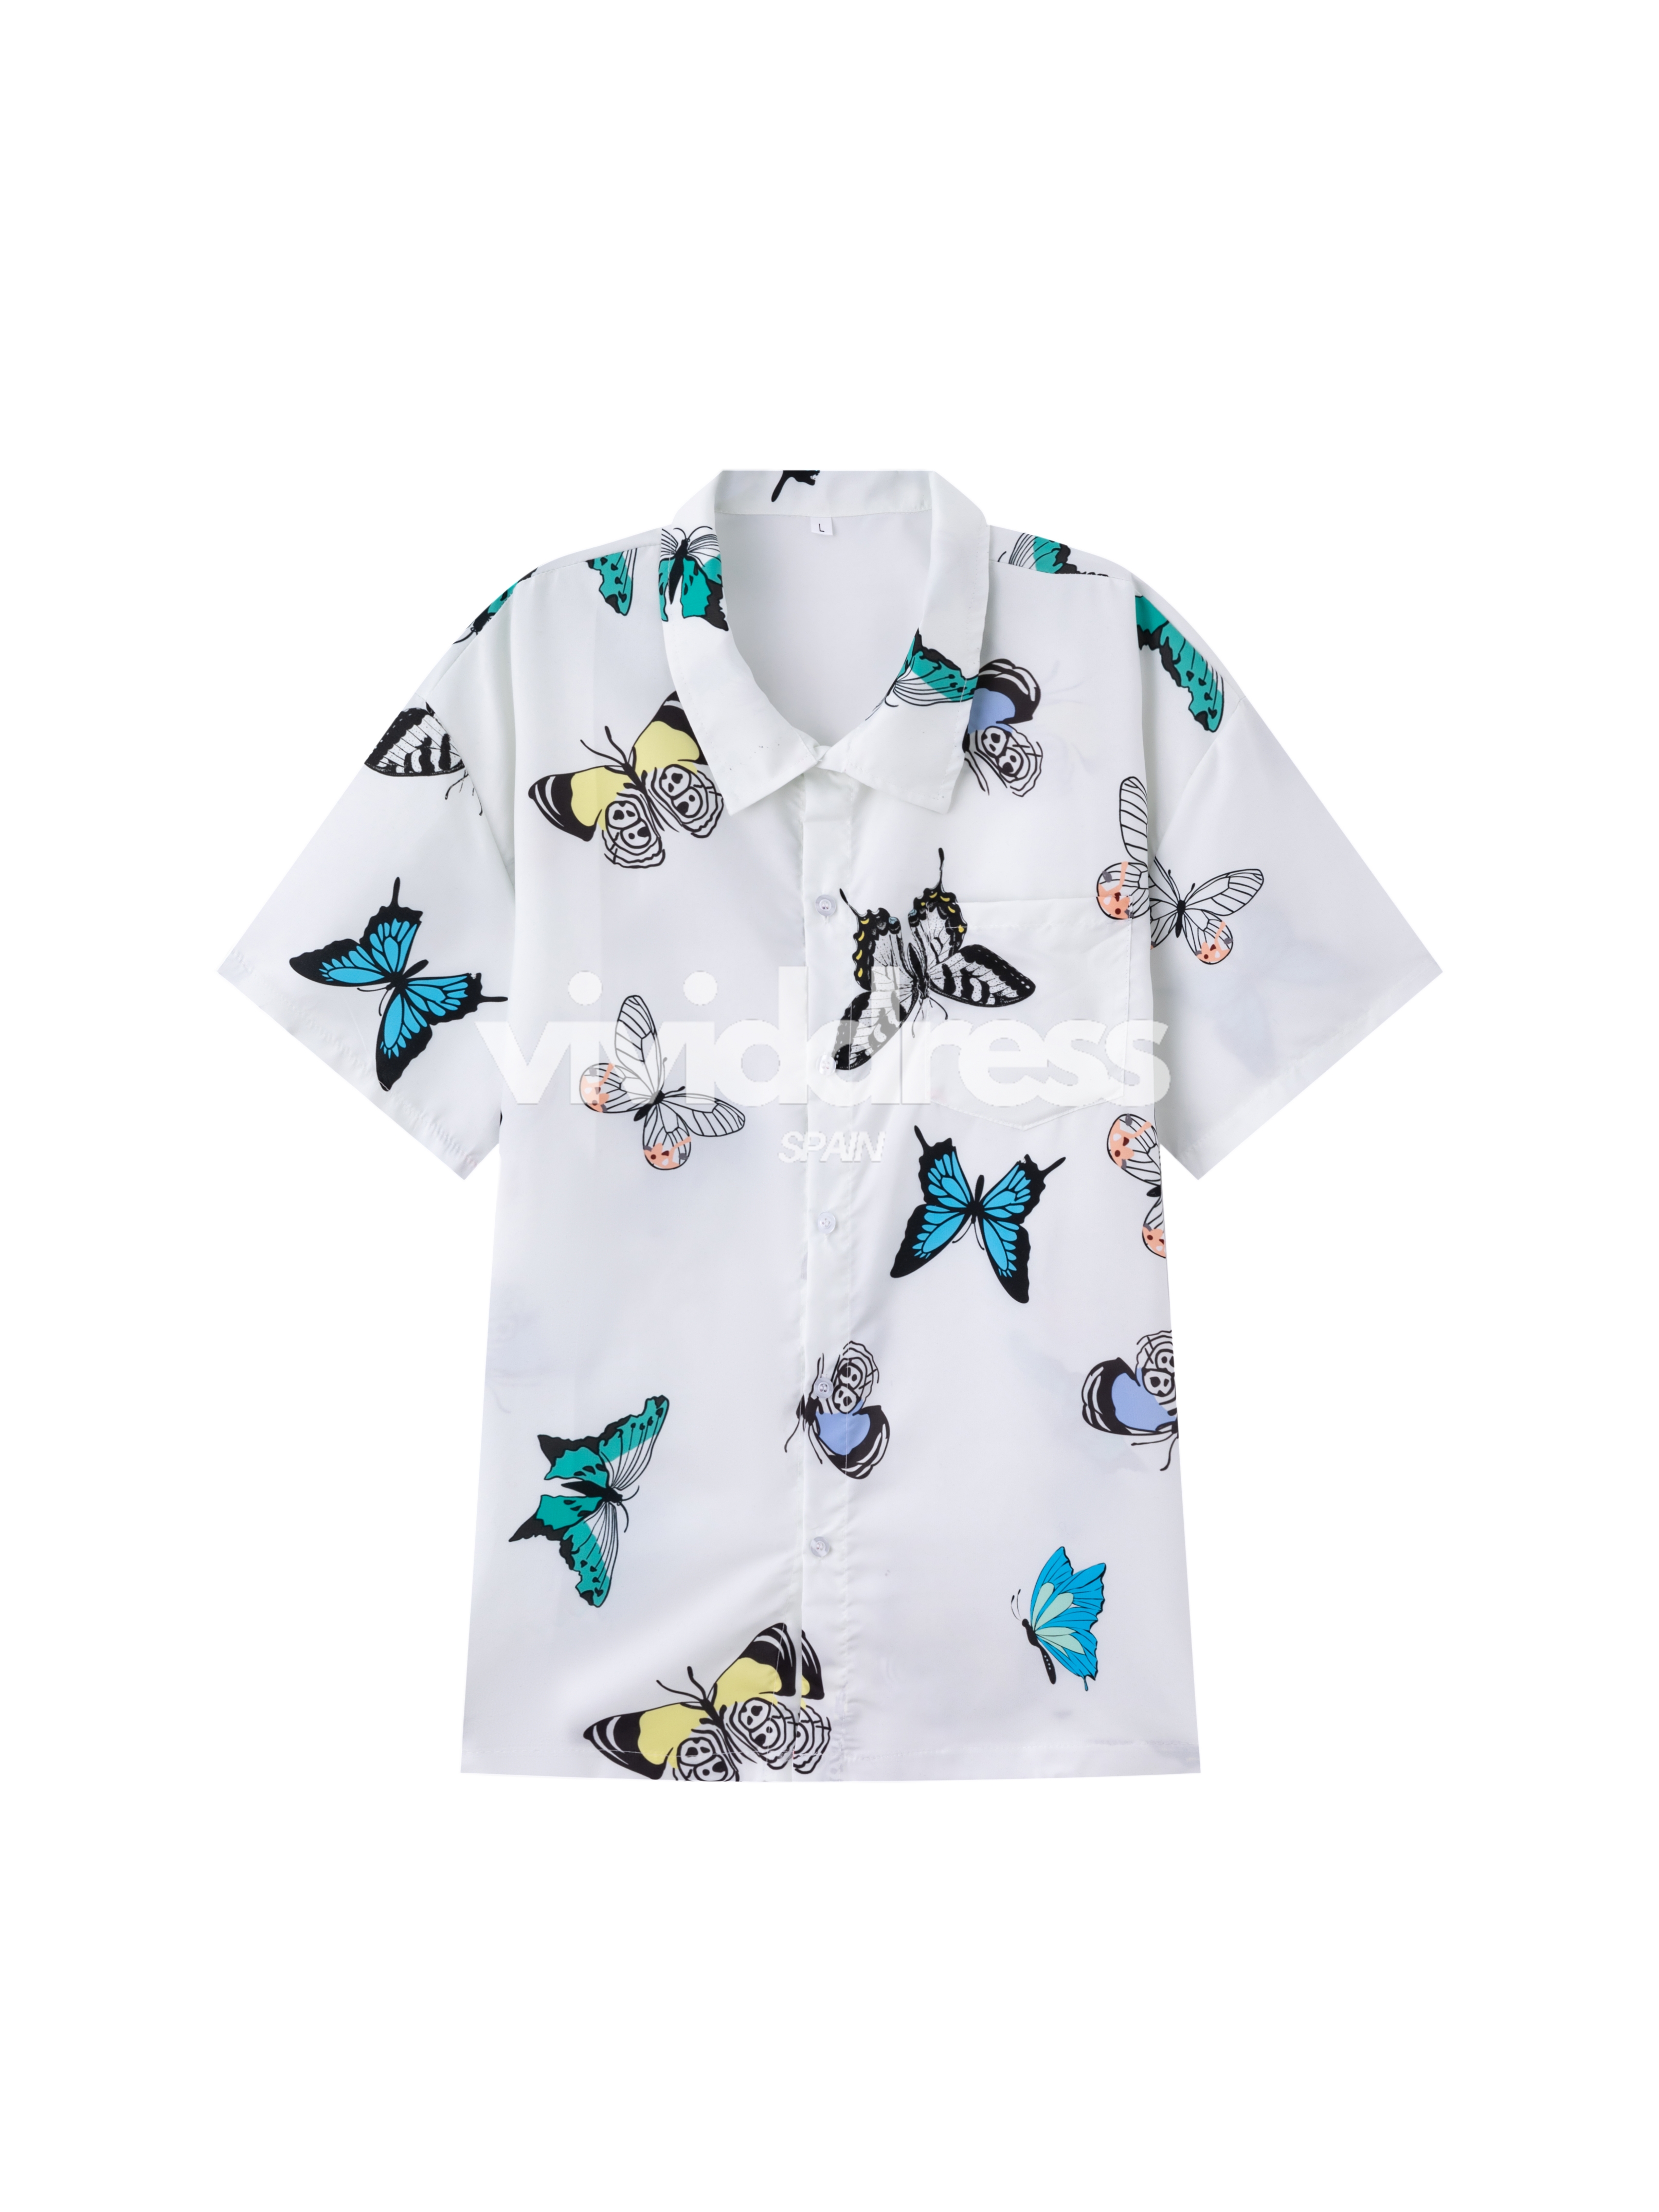 Men's Casual Butterfly Print Beach Summer Holiday Short Sleeve Shirt